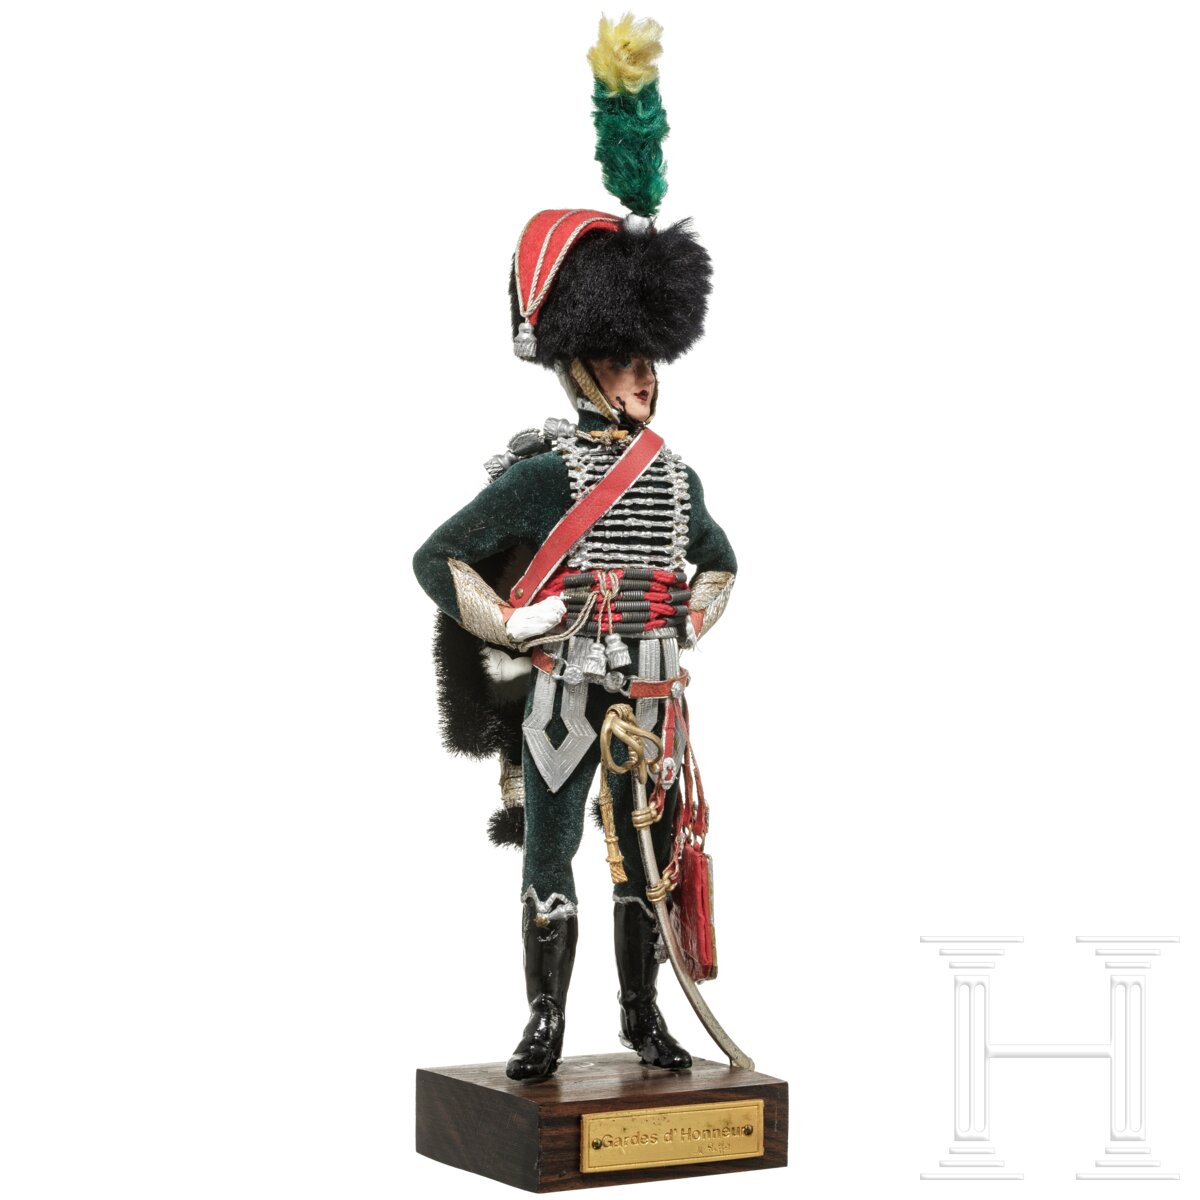 Offizier der Gardes d'honneur um 1810 - Uniformfigur von Marcel Riffet, 20. Jhdt. - Image 2 of 6